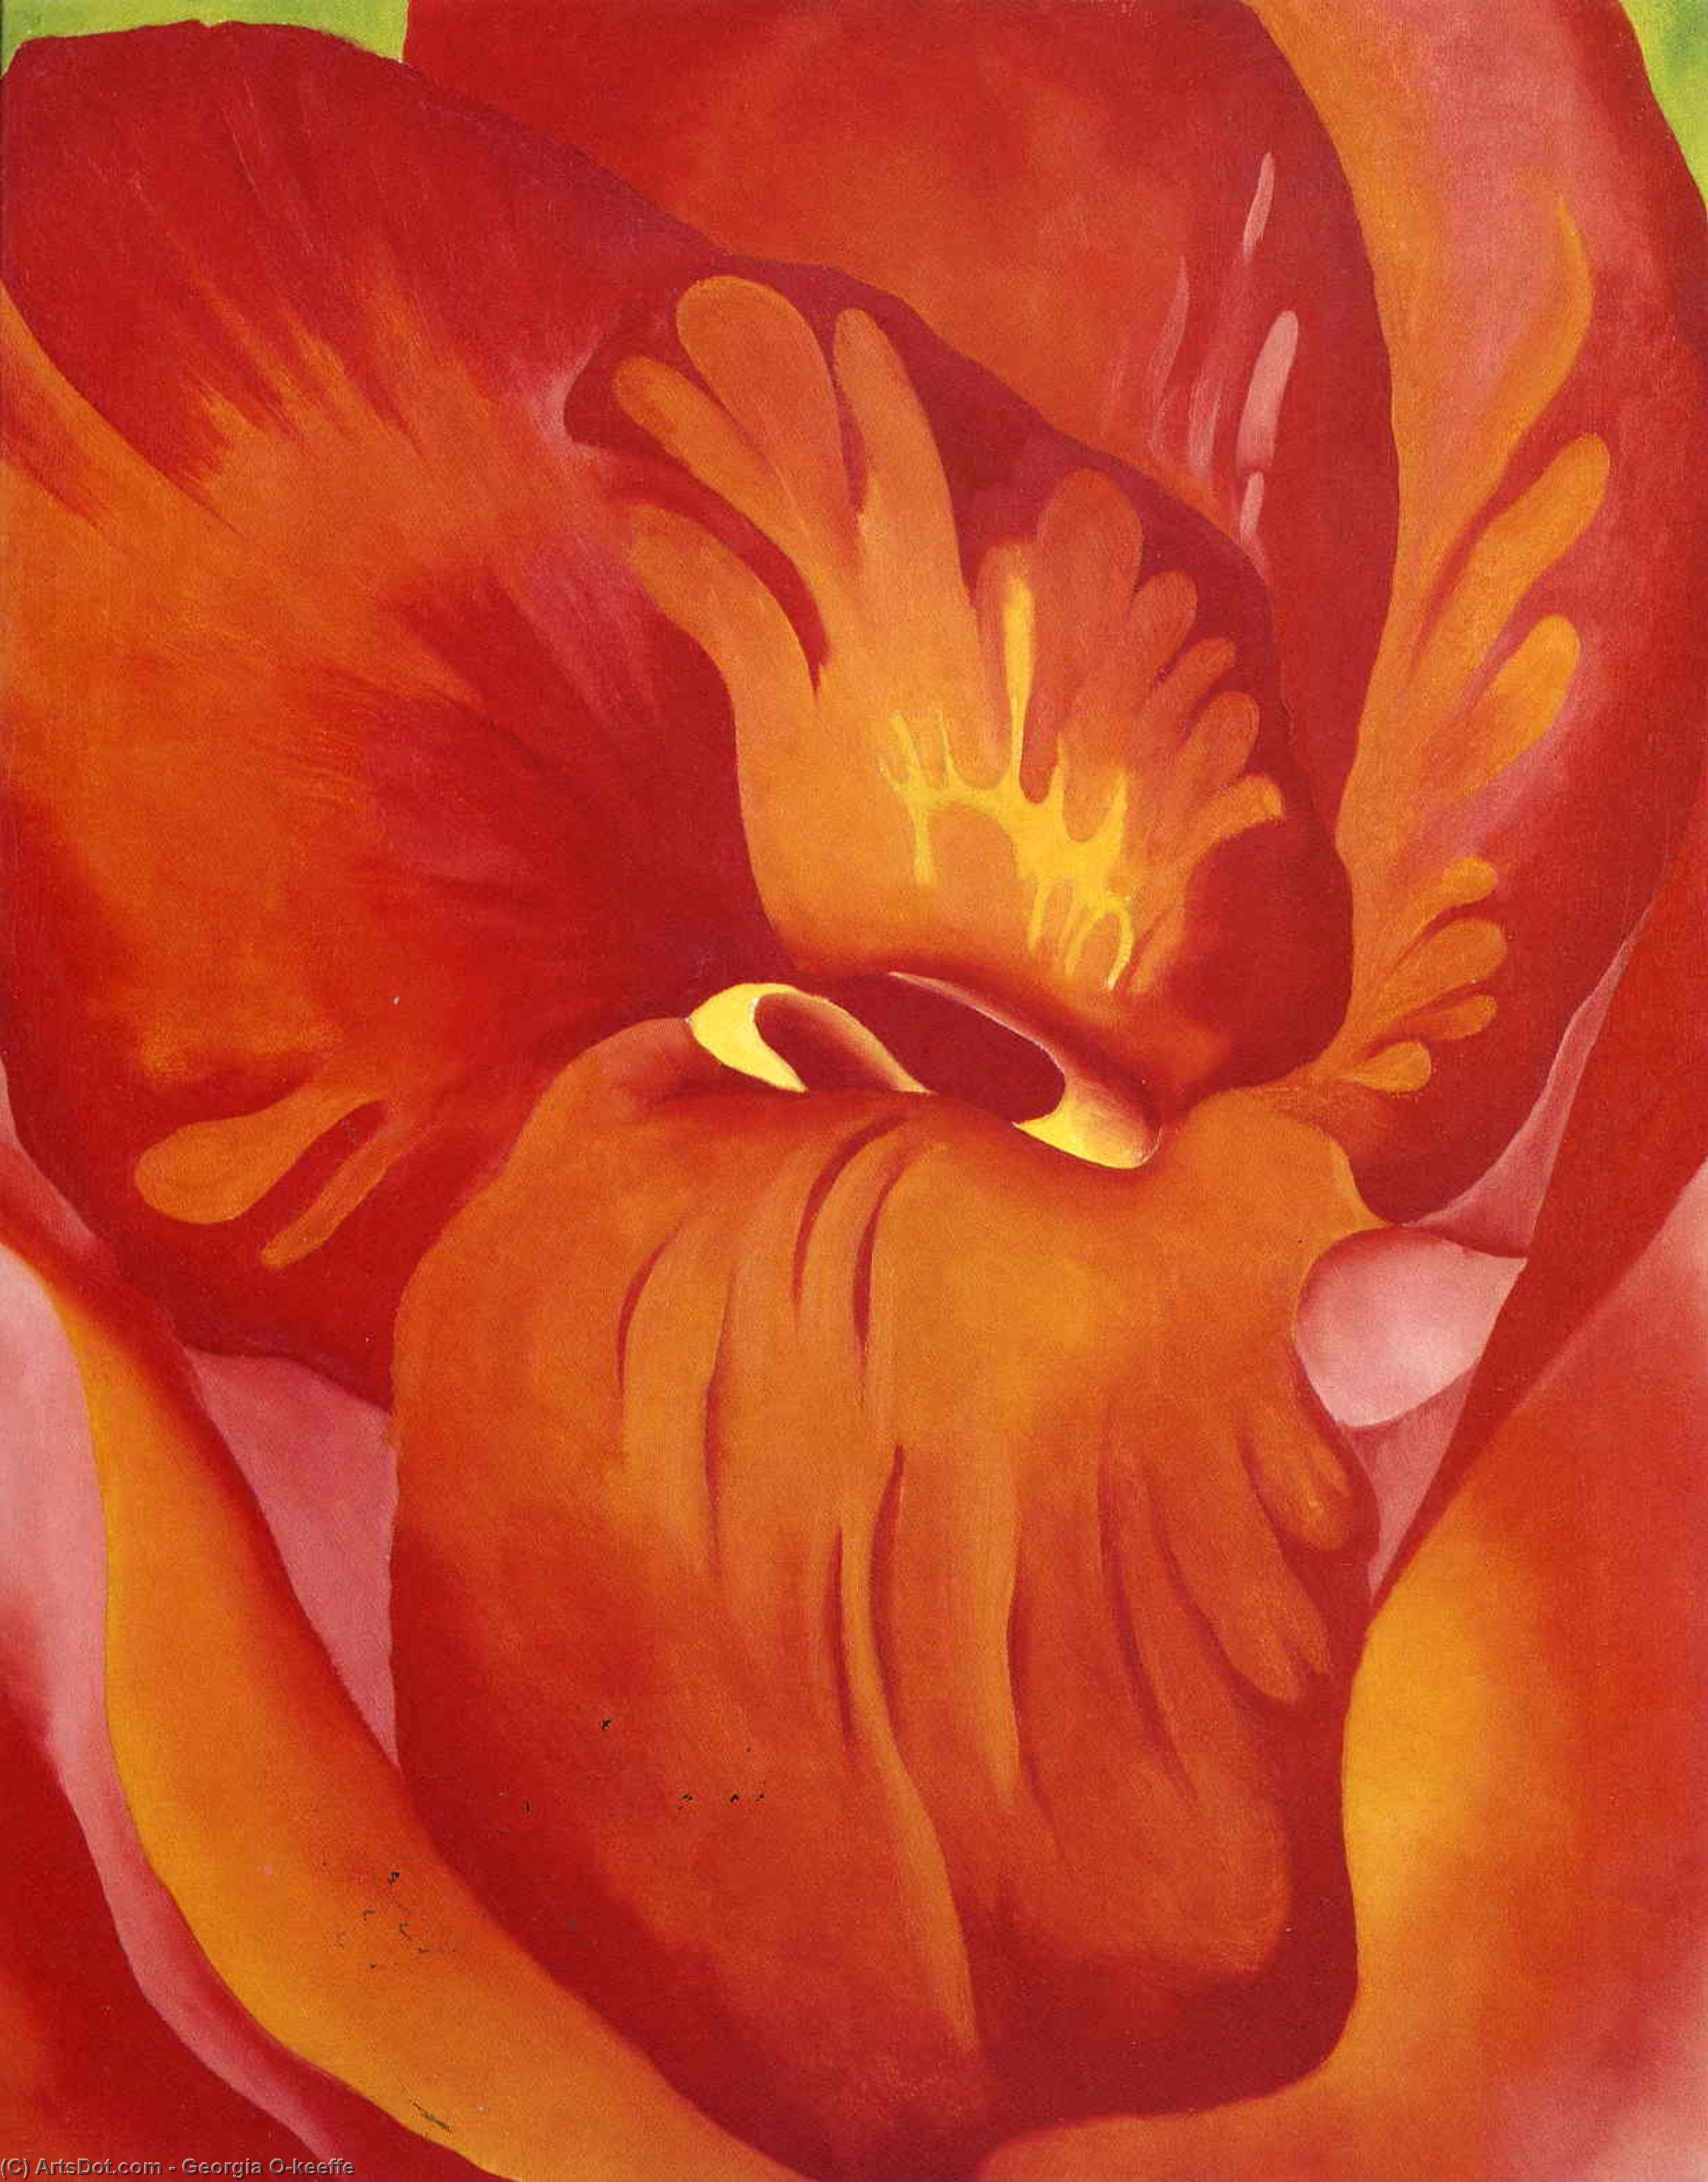 WikiOO.org - Enciclopédia das Belas Artes - Pintura, Arte por Georgia Totto O'keeffe - Canna Red and Orange